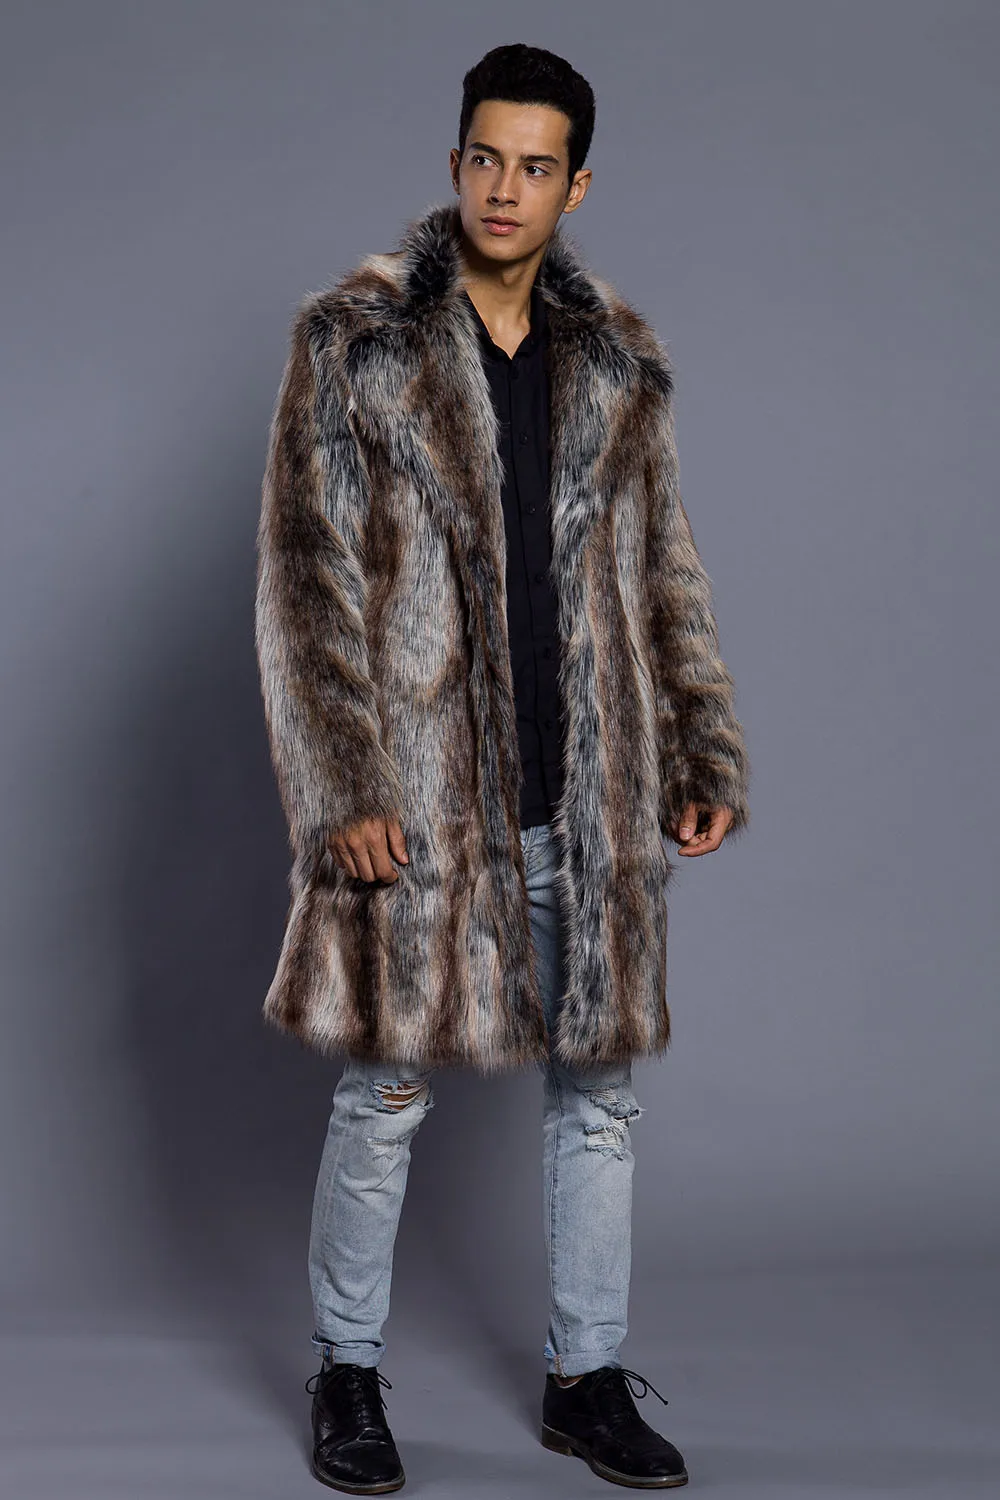 Мужское меховое пальто, зимняя верхняя одежда из искусственного меха норки, пальто Campera Cuero Hombre Abrigo, мужские куртки, chaqueta moto hombre, верхняя одежда